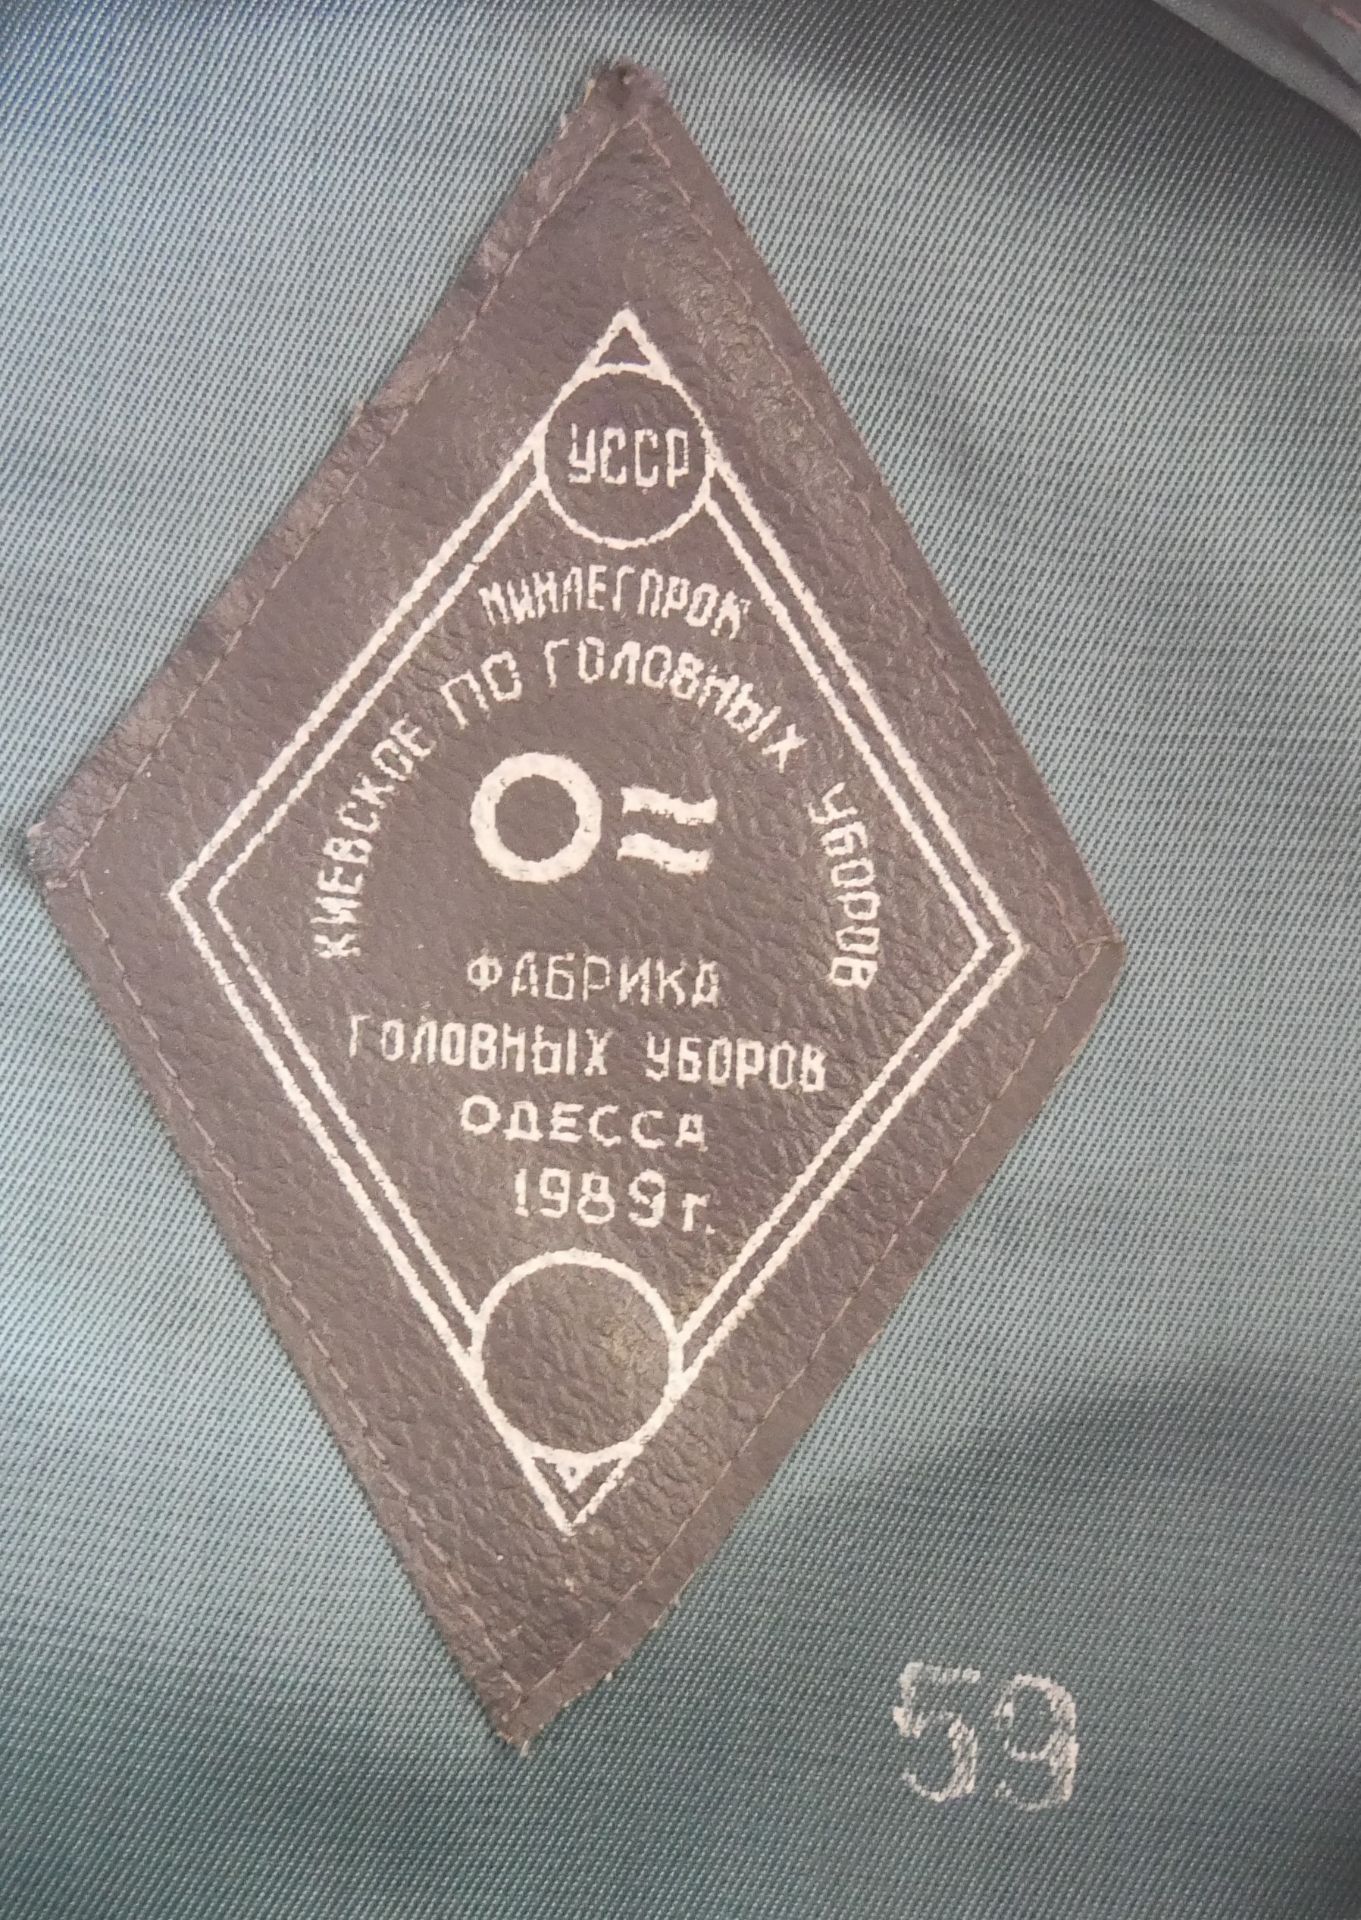 Aus Sammelauflösung! Uniformmütze / Schirmmütze UDSSR CCCP Armee Offizier. Größe 59, in blau / - Bild 4 aus 4